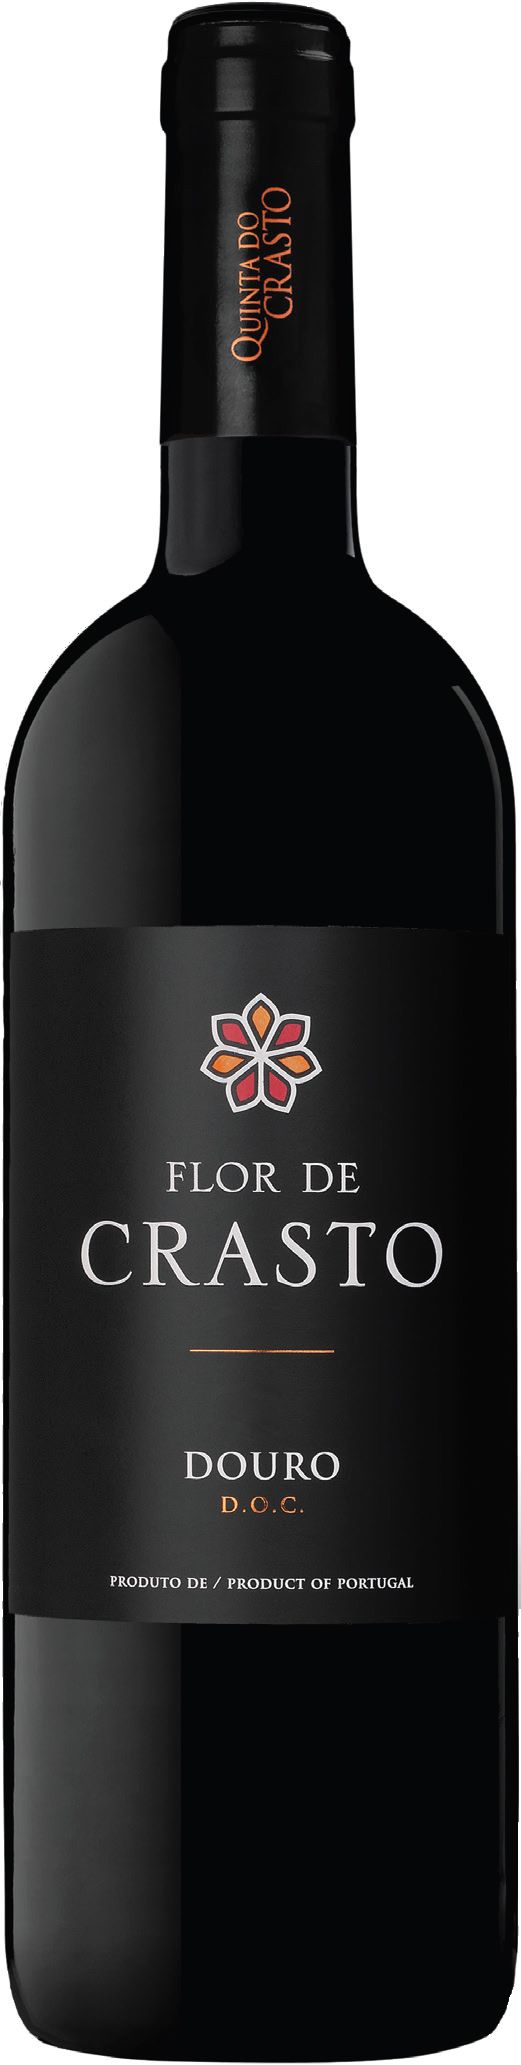 Quinta Do Crasto, Flor De Crasto Tinto, 2016